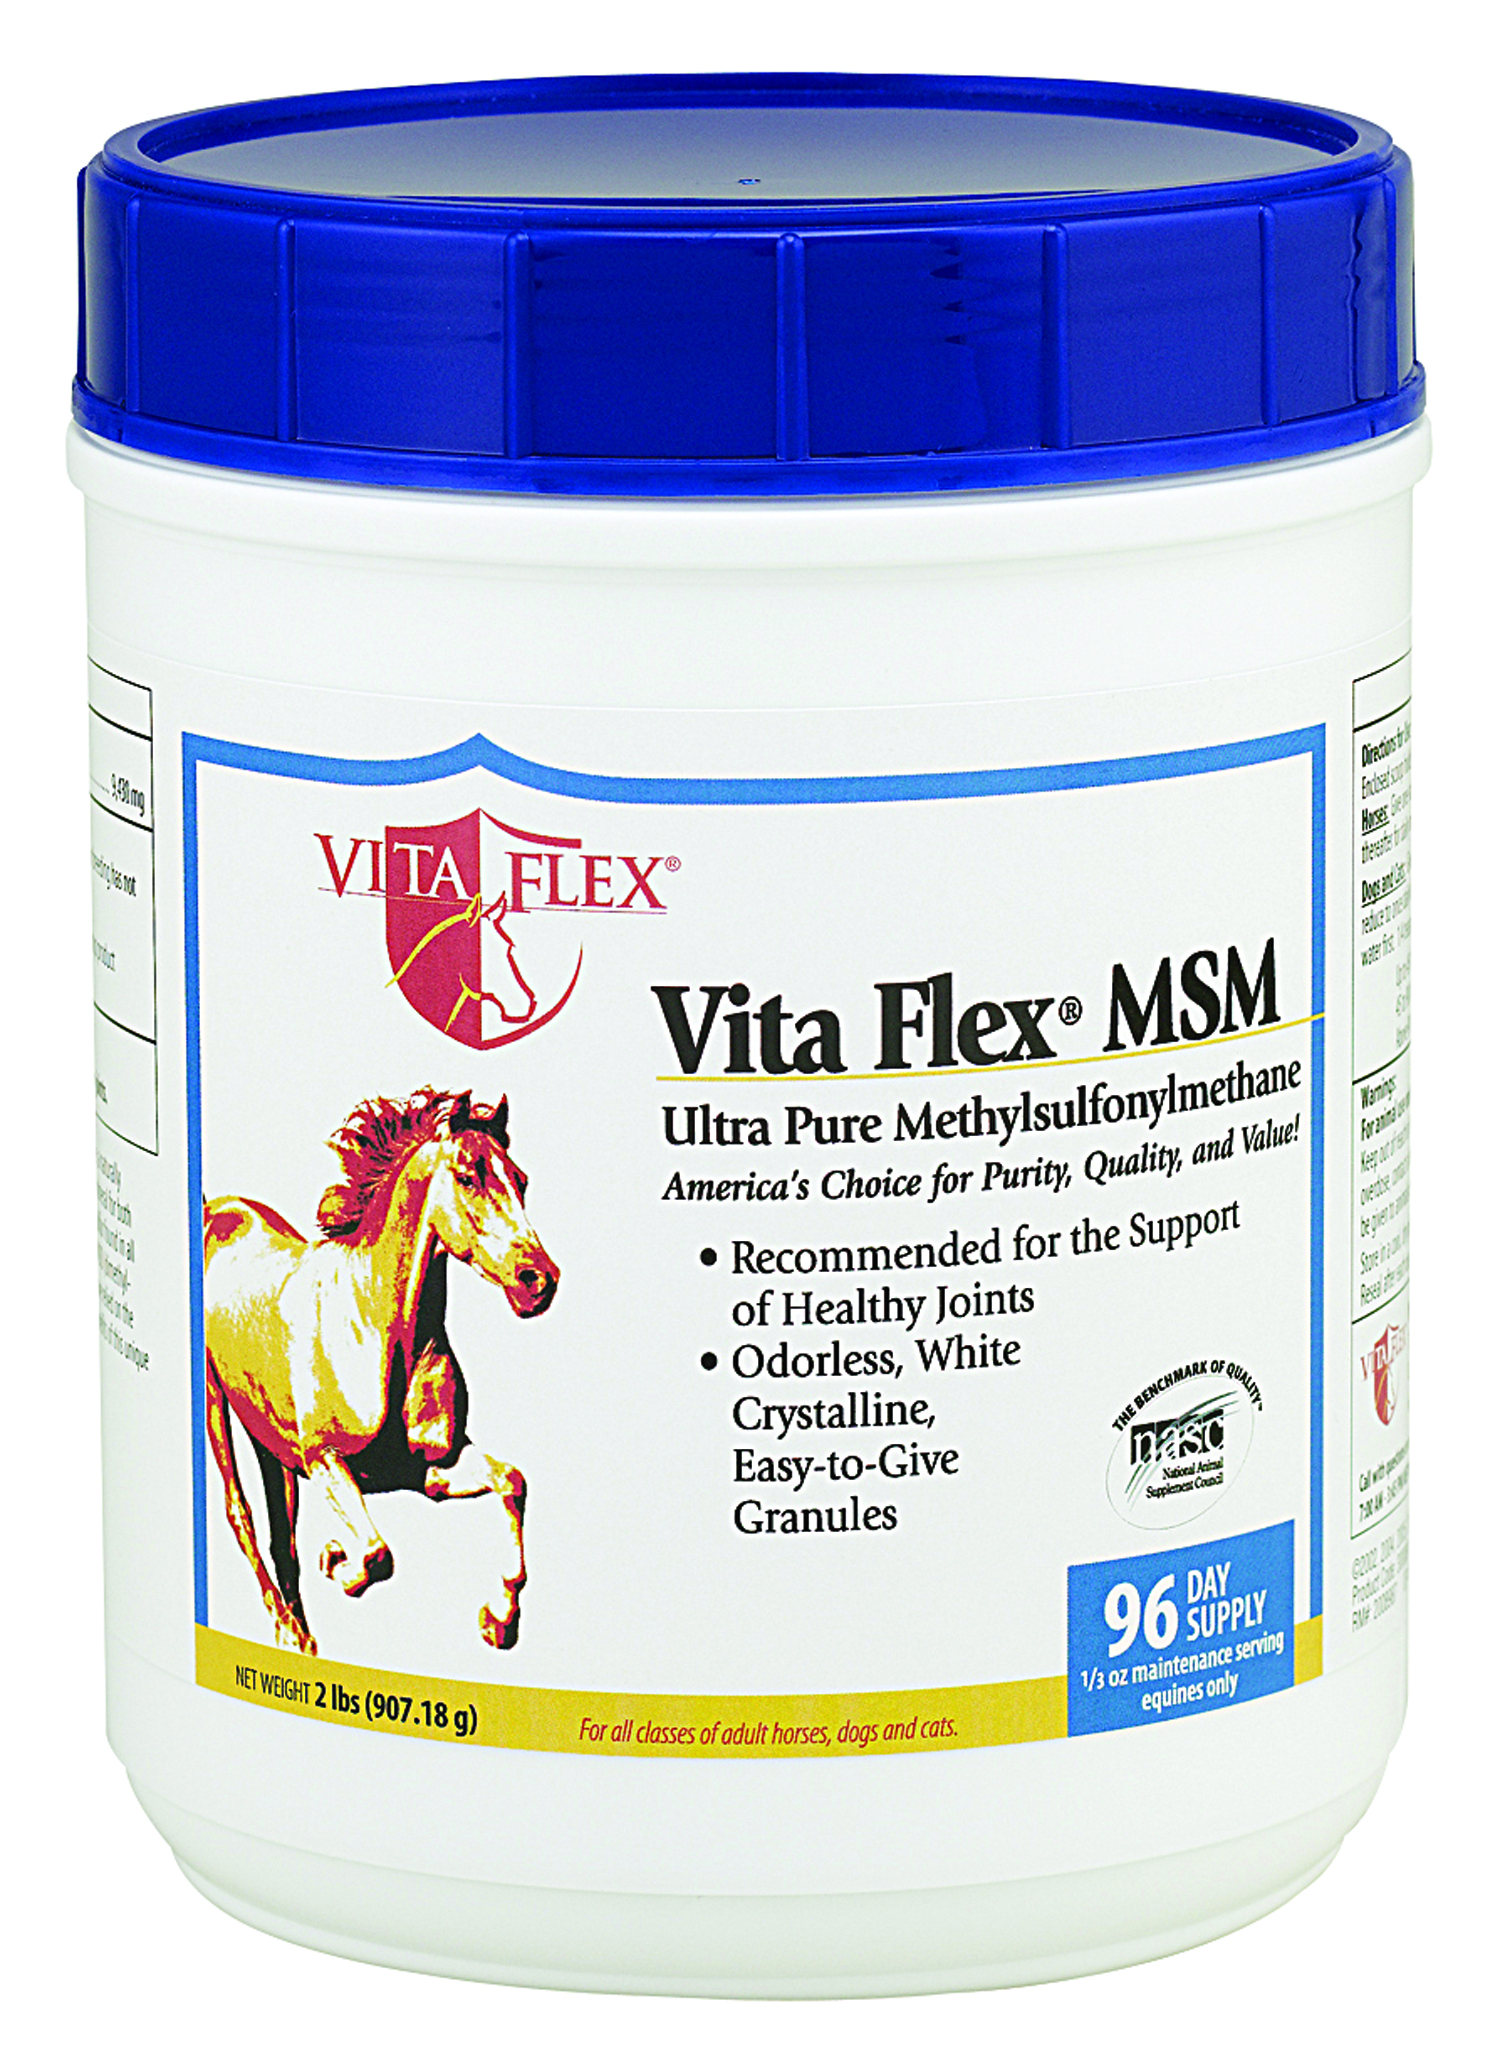 Vita Flex MSM - 2lbs